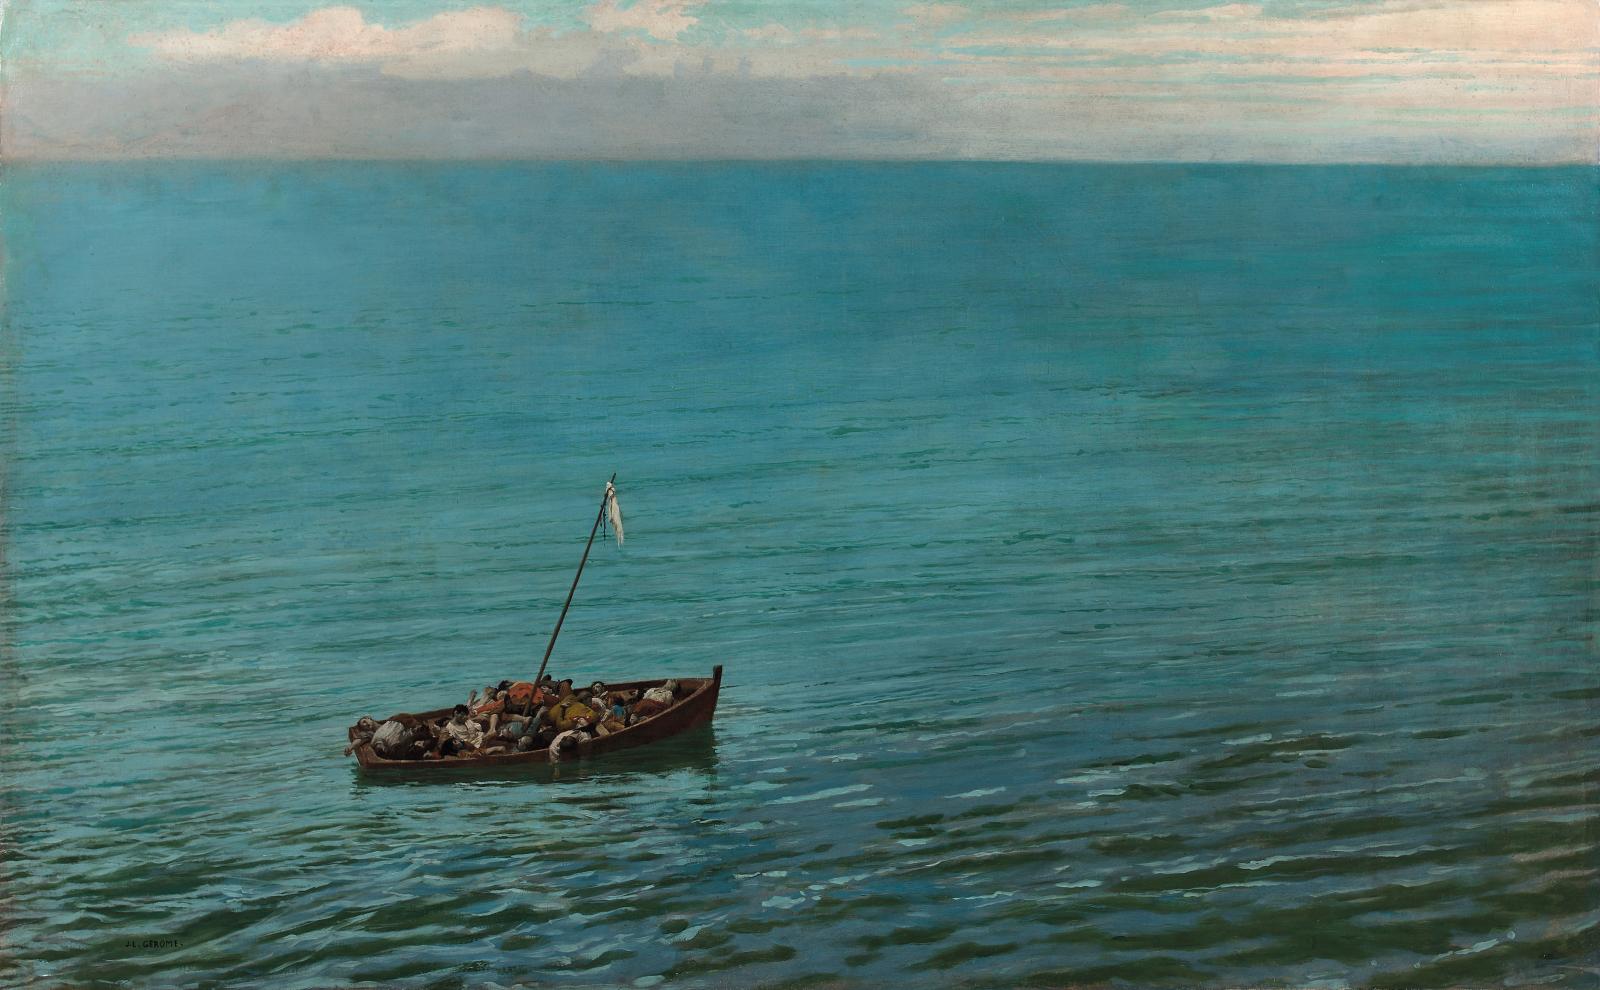 L’épave, une toile inédite de Jean-Léon Gérôme découverte dans une collection inconnue